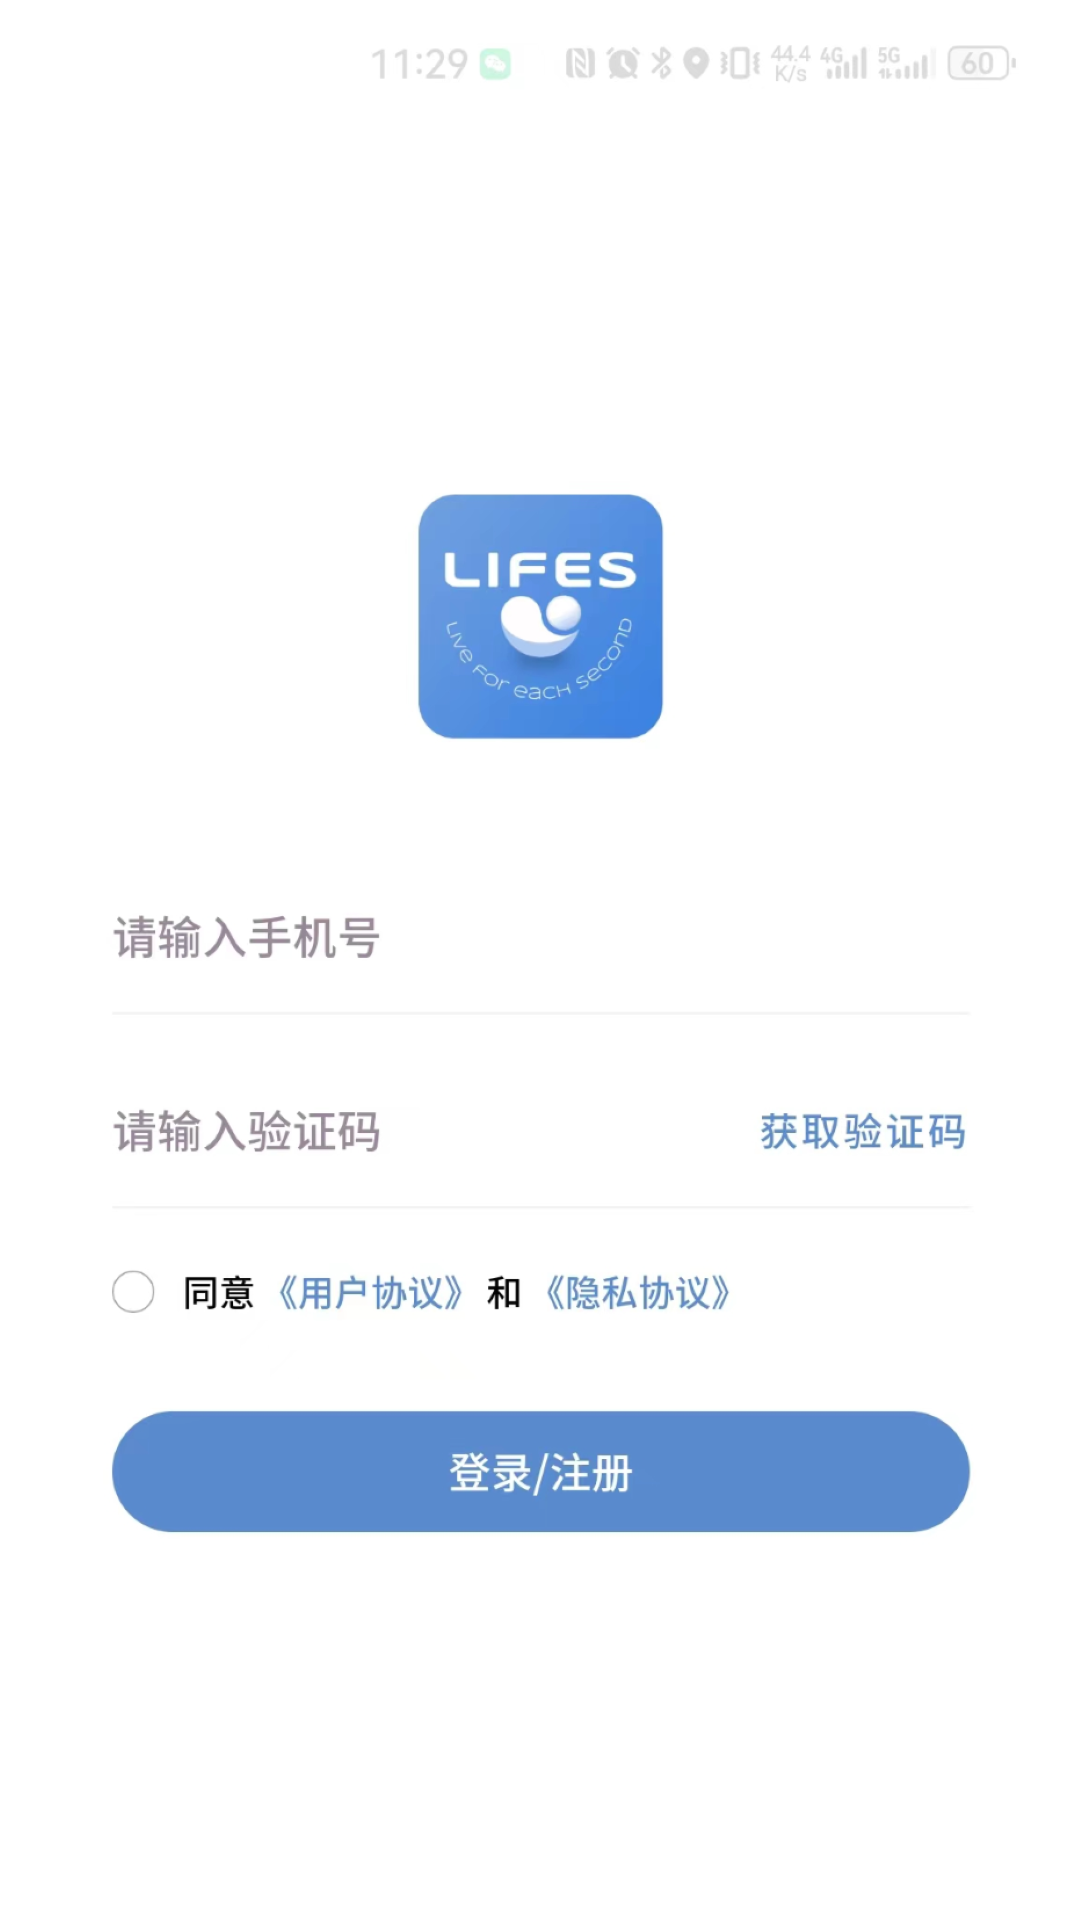 LIFES软件下载,LIFES软件官方版 v1.0.0